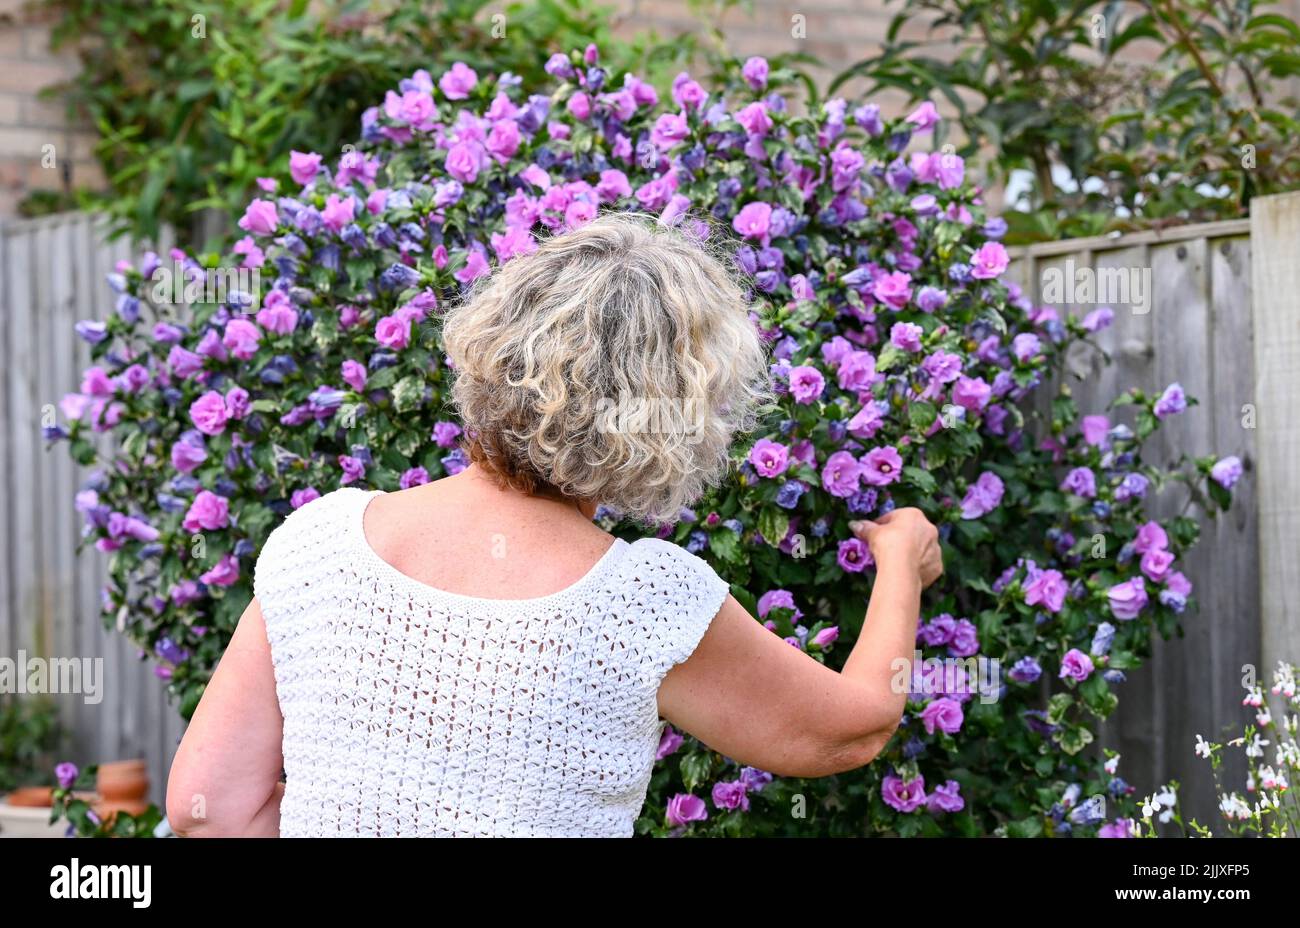 Mujer de mediana edad que recoge una flor forma un arbusto Hibiscus ( Hibiscus syriacus rosa ) en jardín urbano Fotografía del Reino Unido tomada por Simon Dack Foto de stock